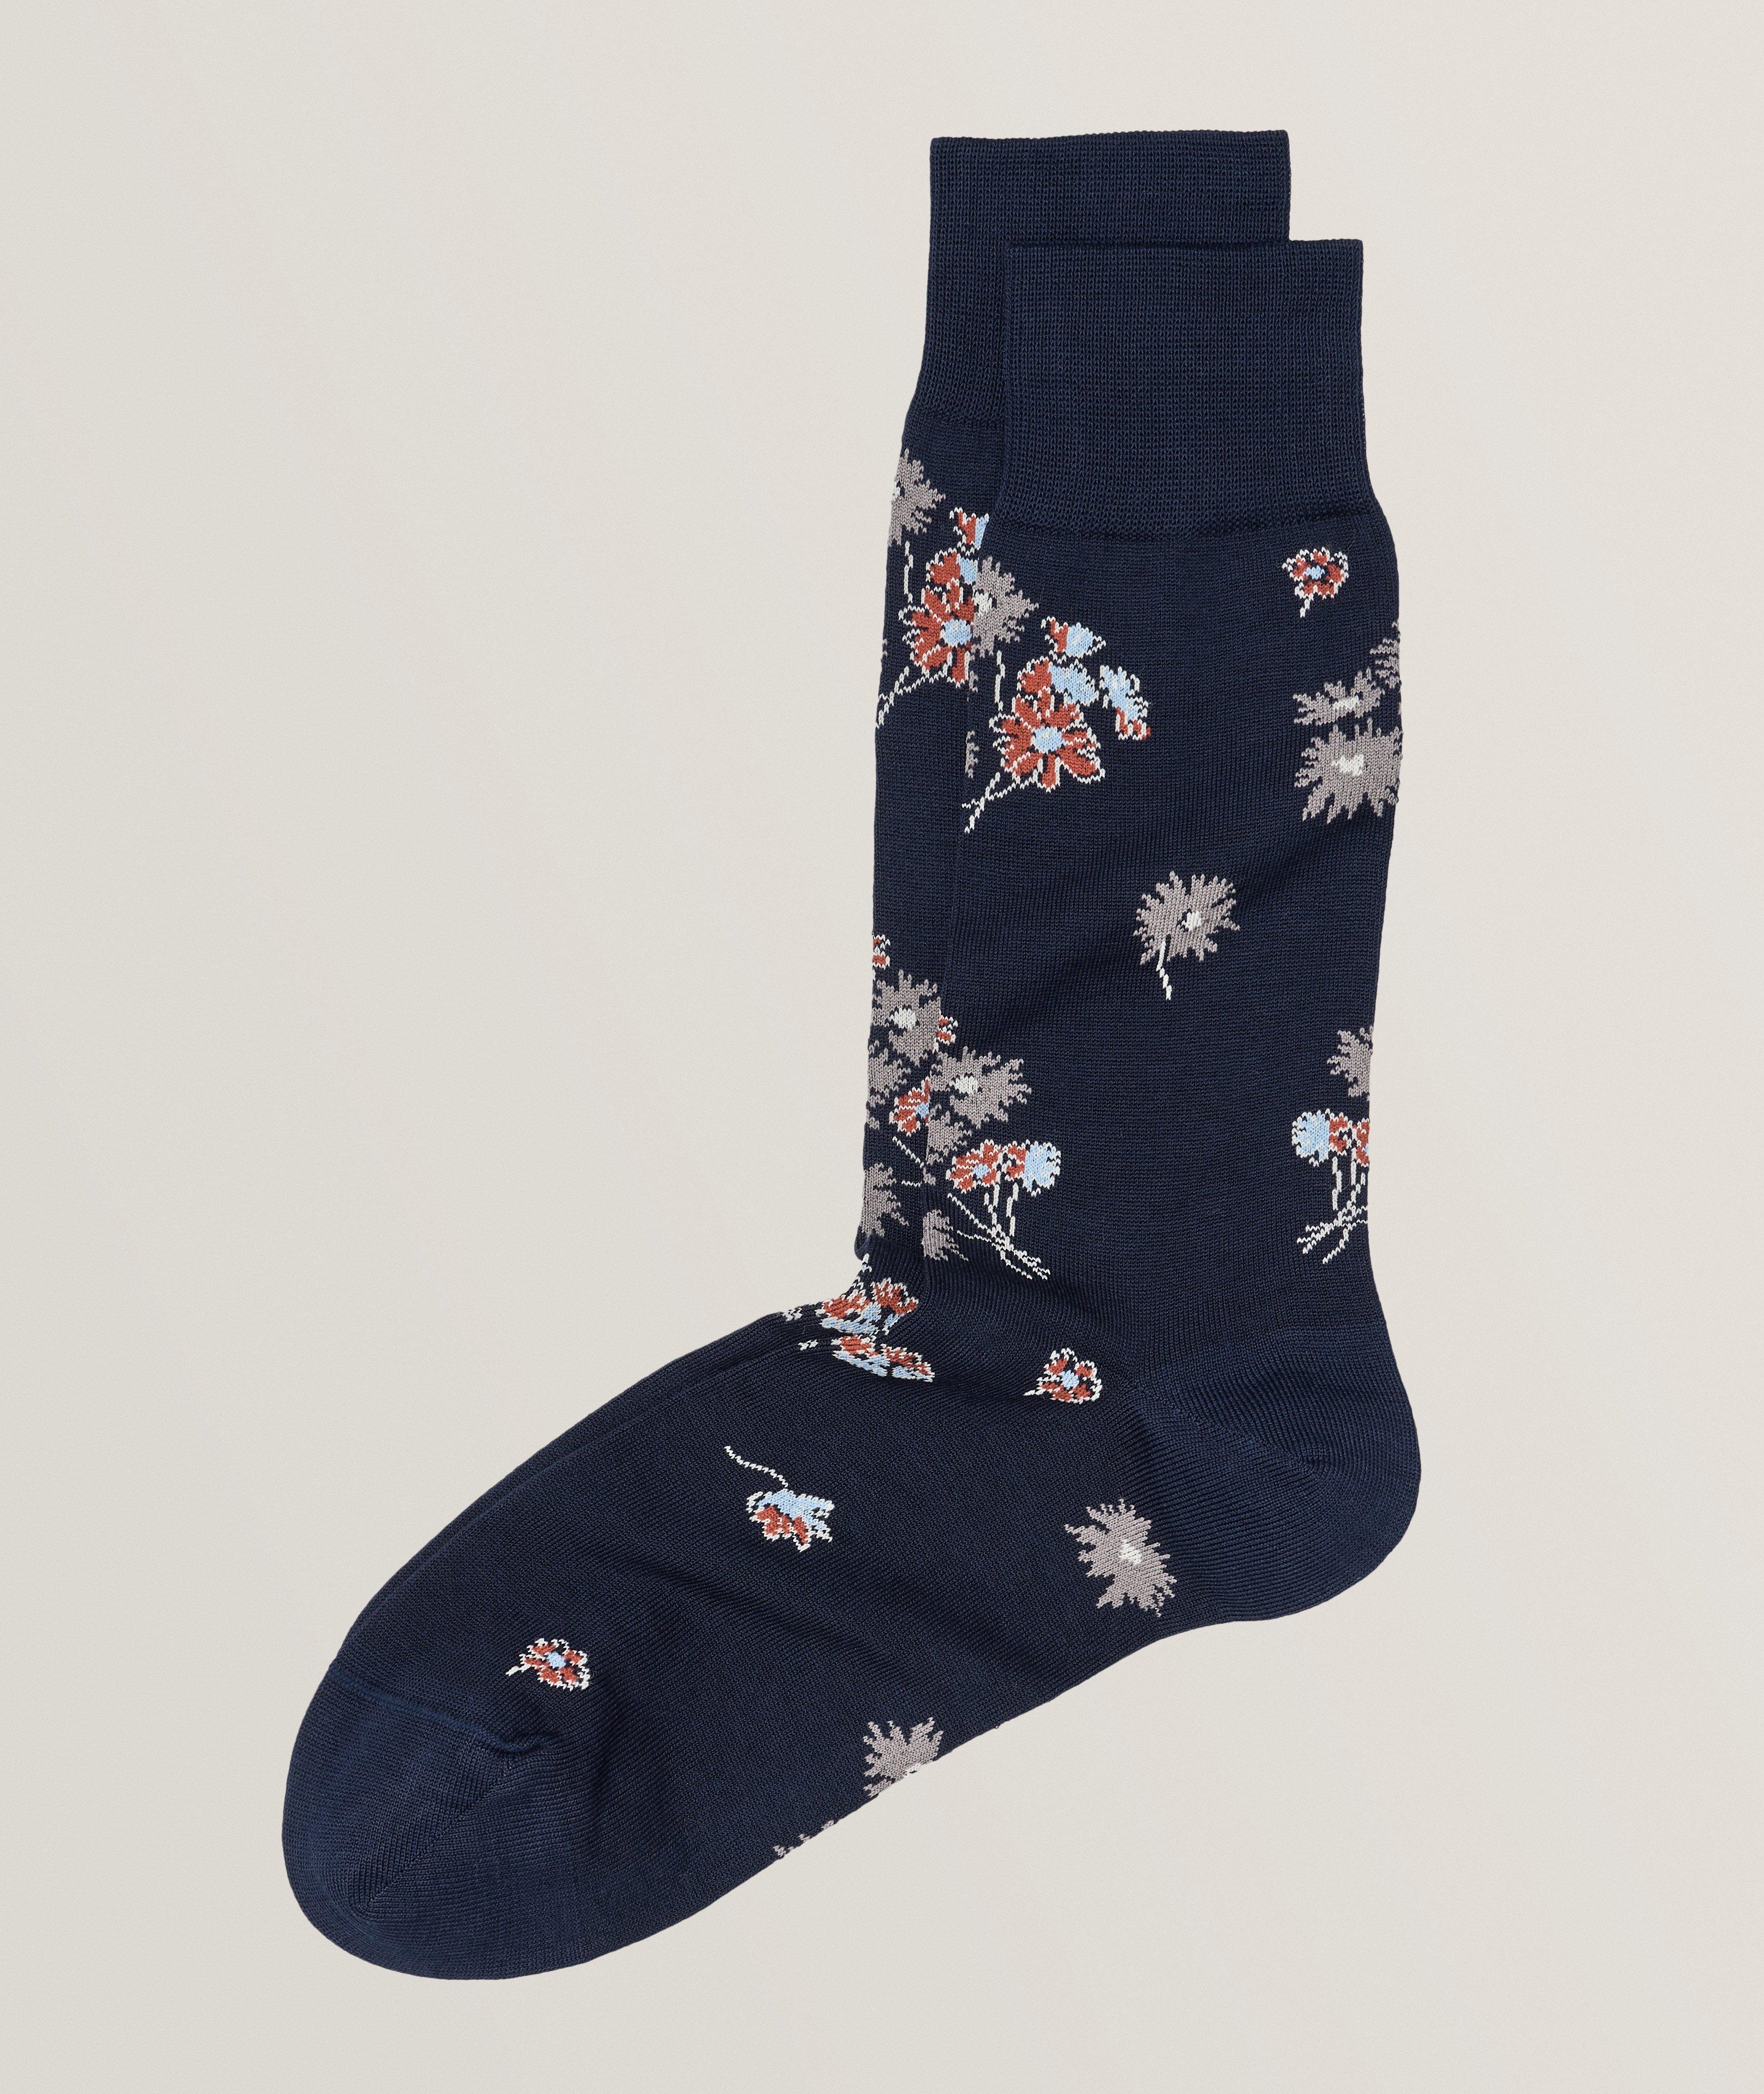 Chaussettes en mélange de coton à motif floral image 0